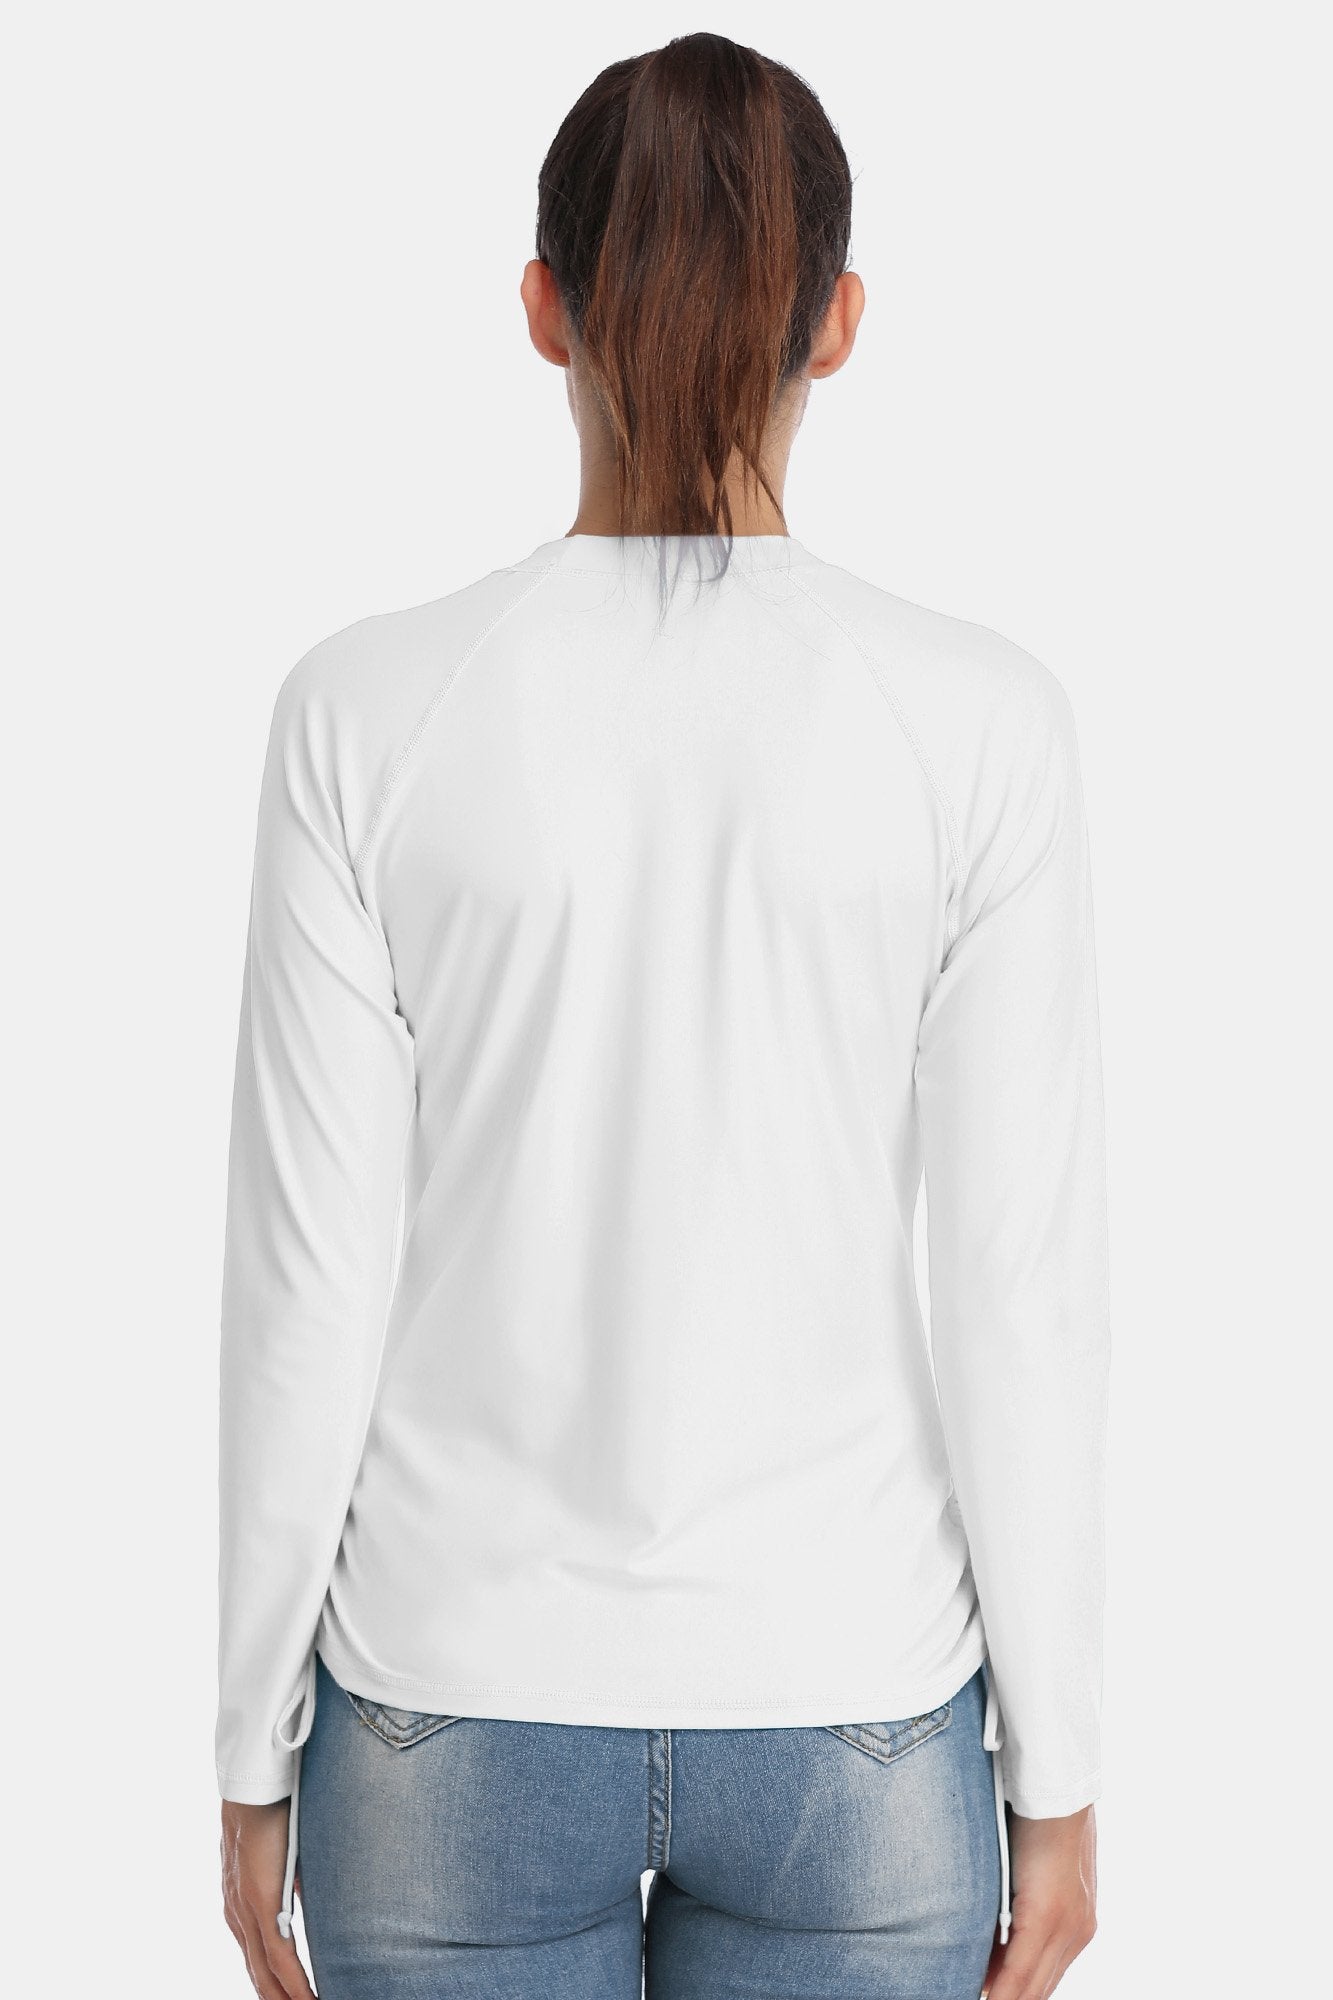 Women's White Drawstring Long Sleeve UPF 50+ Rashguard-Attraco | Fashion Outdoor Clothing